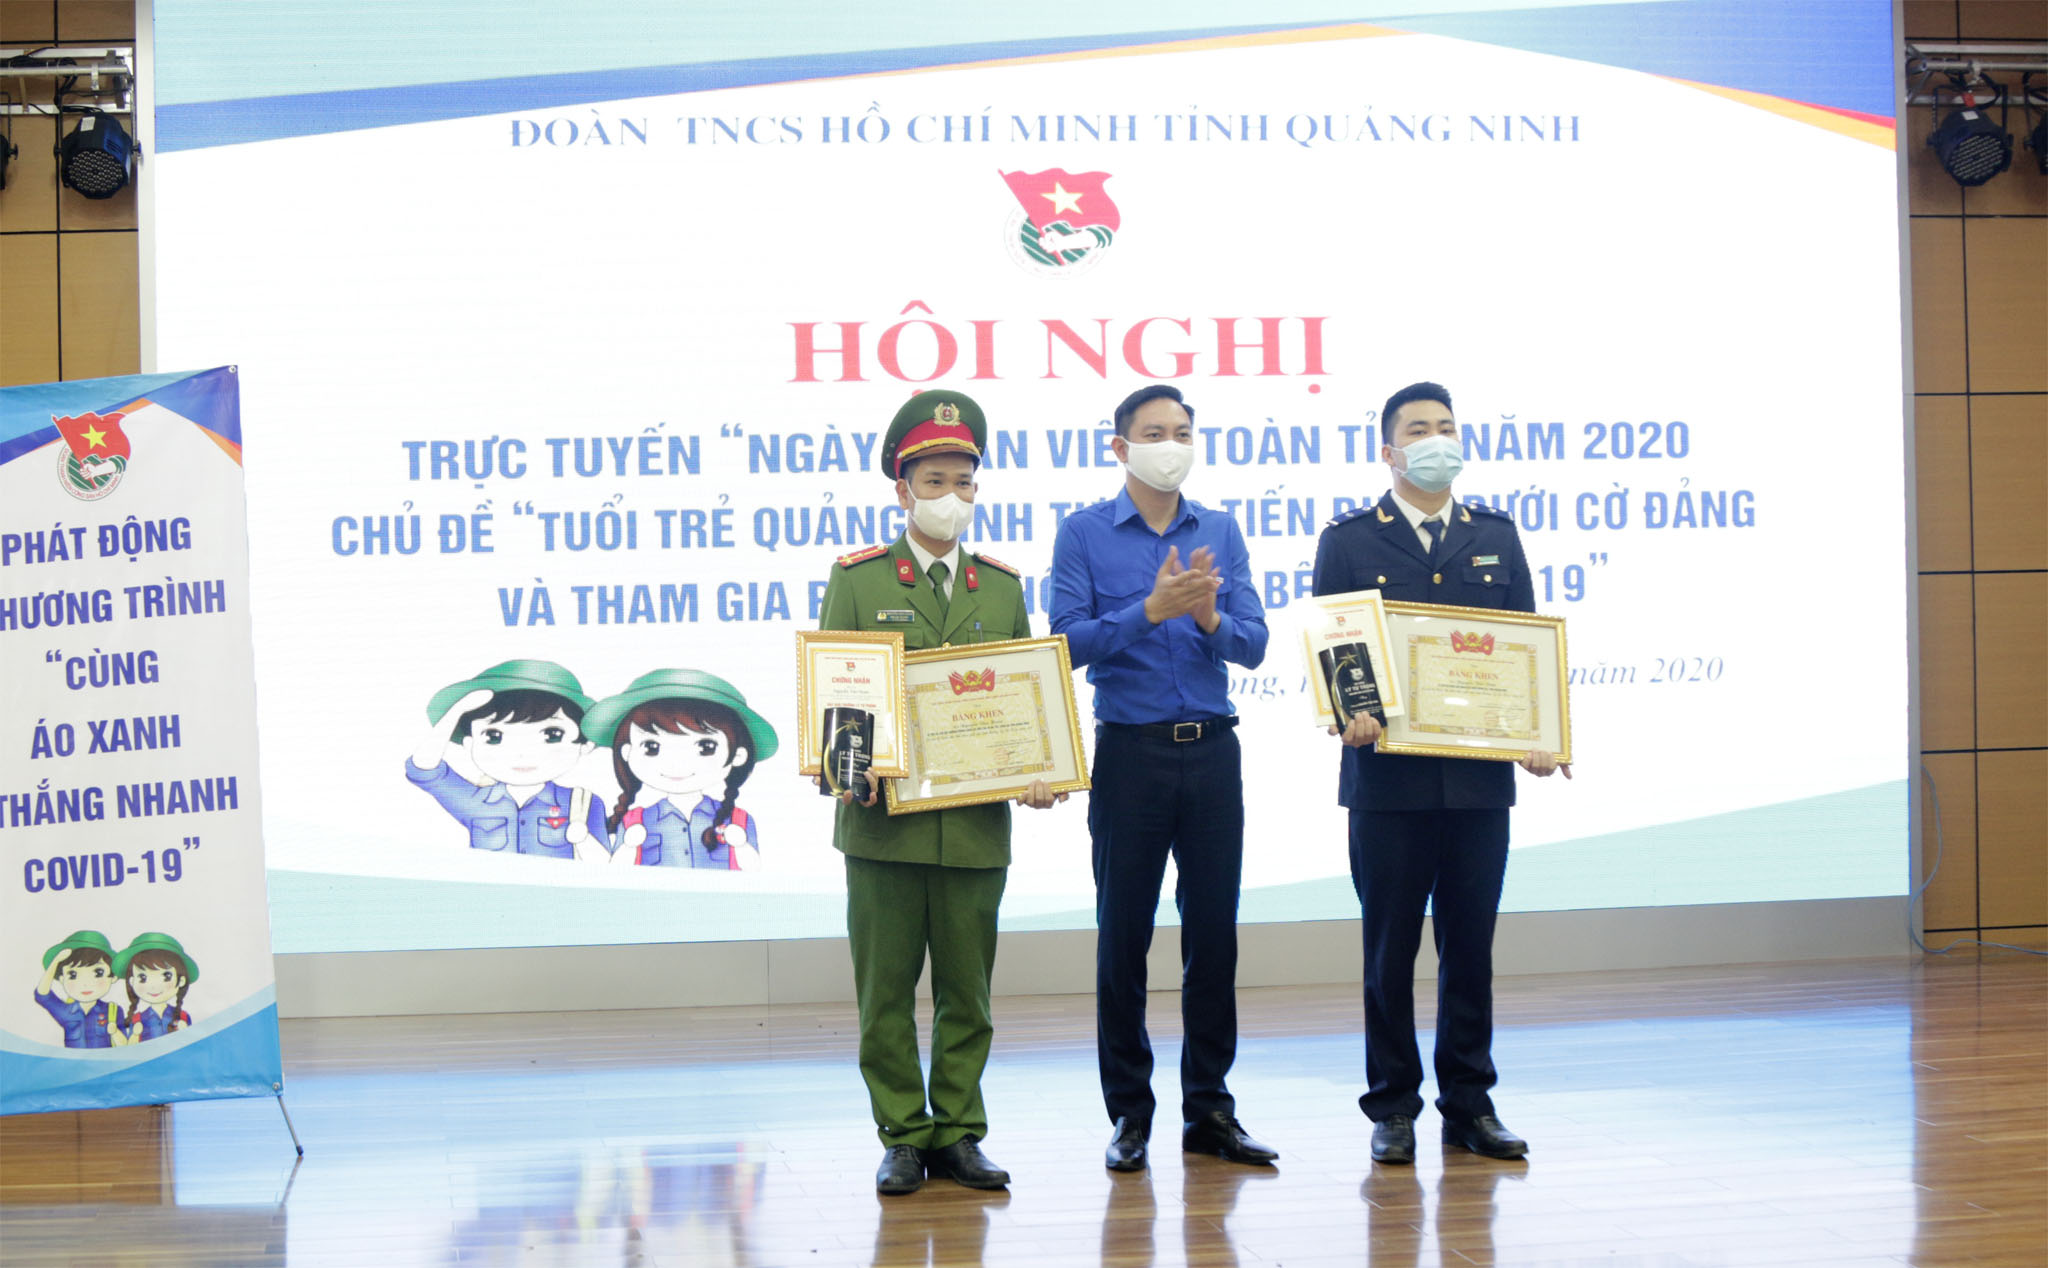 Đồng chí Lê Hùng Sơn, Bí thư Tỉnh đoàn Quảng Ninh trao giải thưởng Lý Tự Trọng năm 2020 cho cán bộ Đoàn có thành tích xuất sắc.